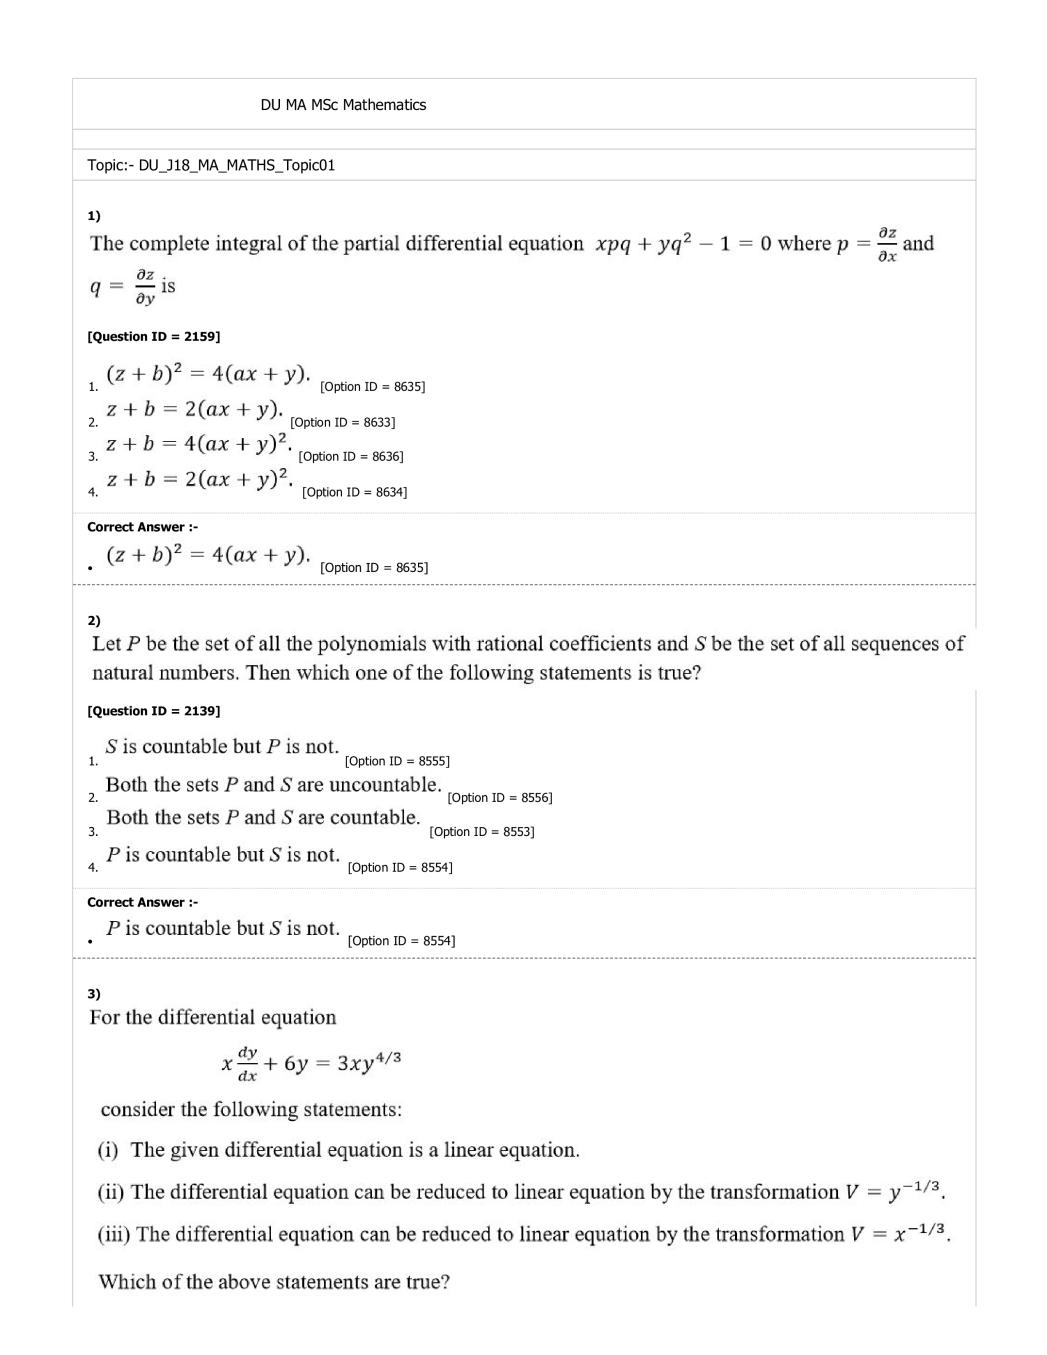 DUET 2018 Question Paper for DU MA MSc Mathematics - Page 1